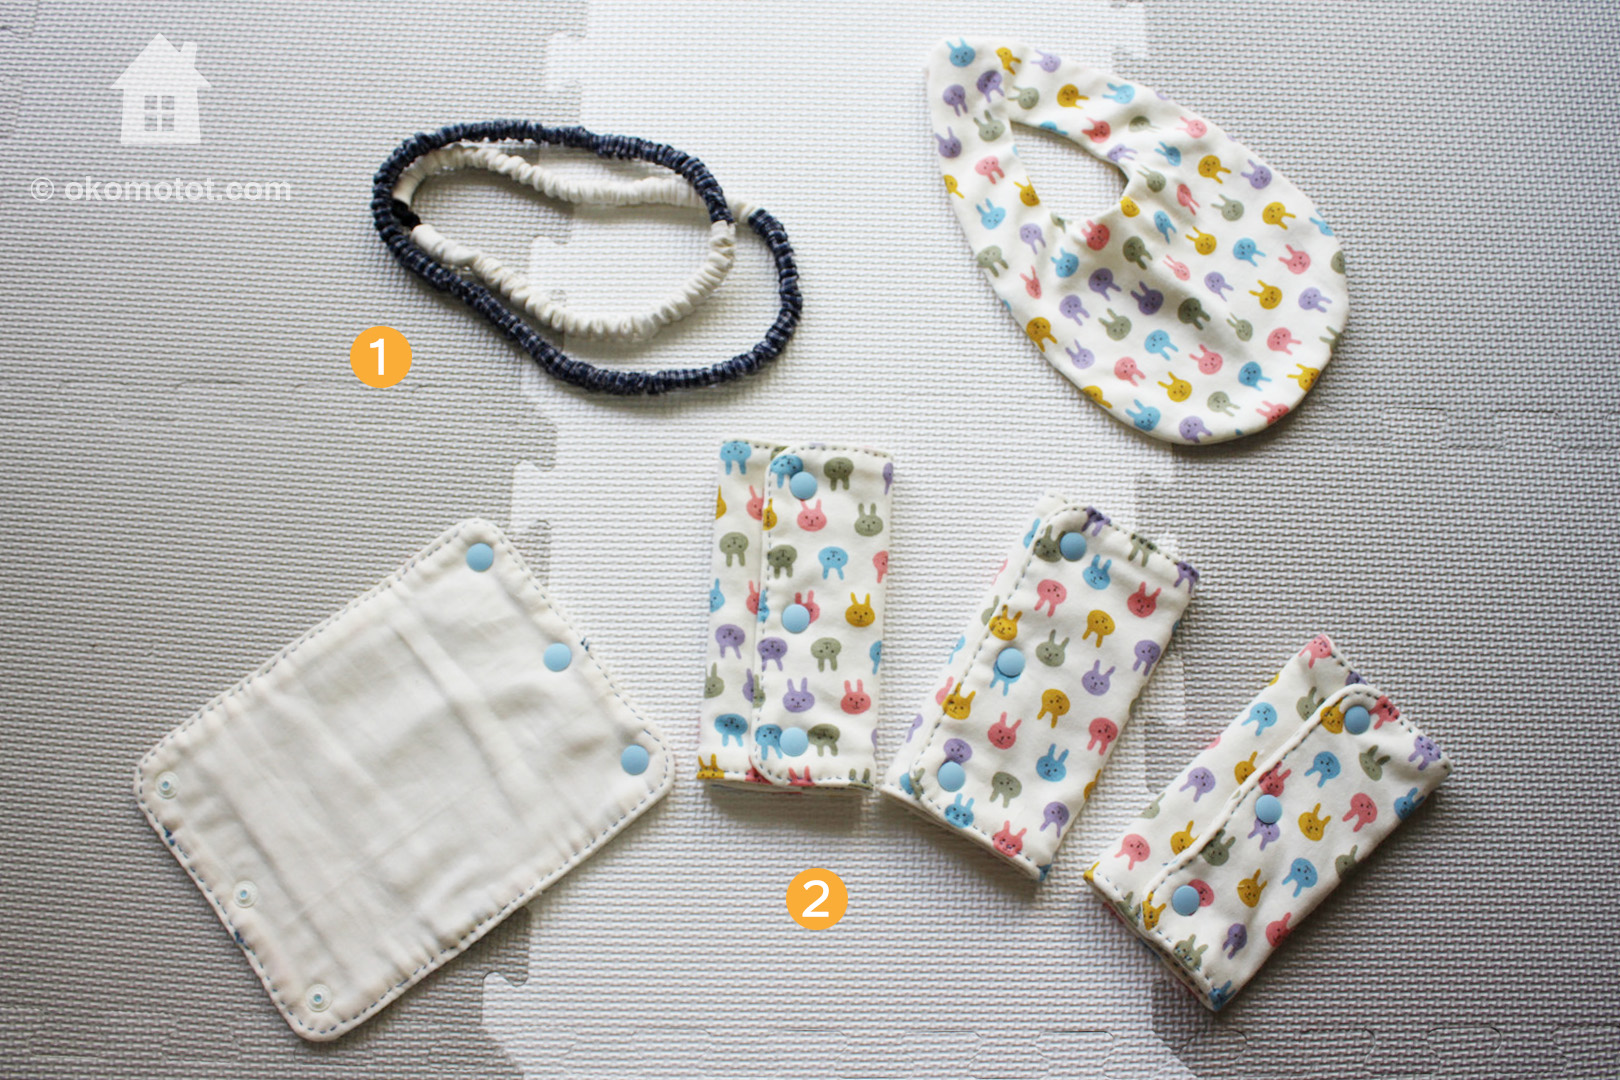 ベビー用品を手縫いで手作り ミシンなしで縫えて初心者にも優しい 簡単 手縫いで赤ちゃんグッズ のキットで始めるのオススメです ほどほど